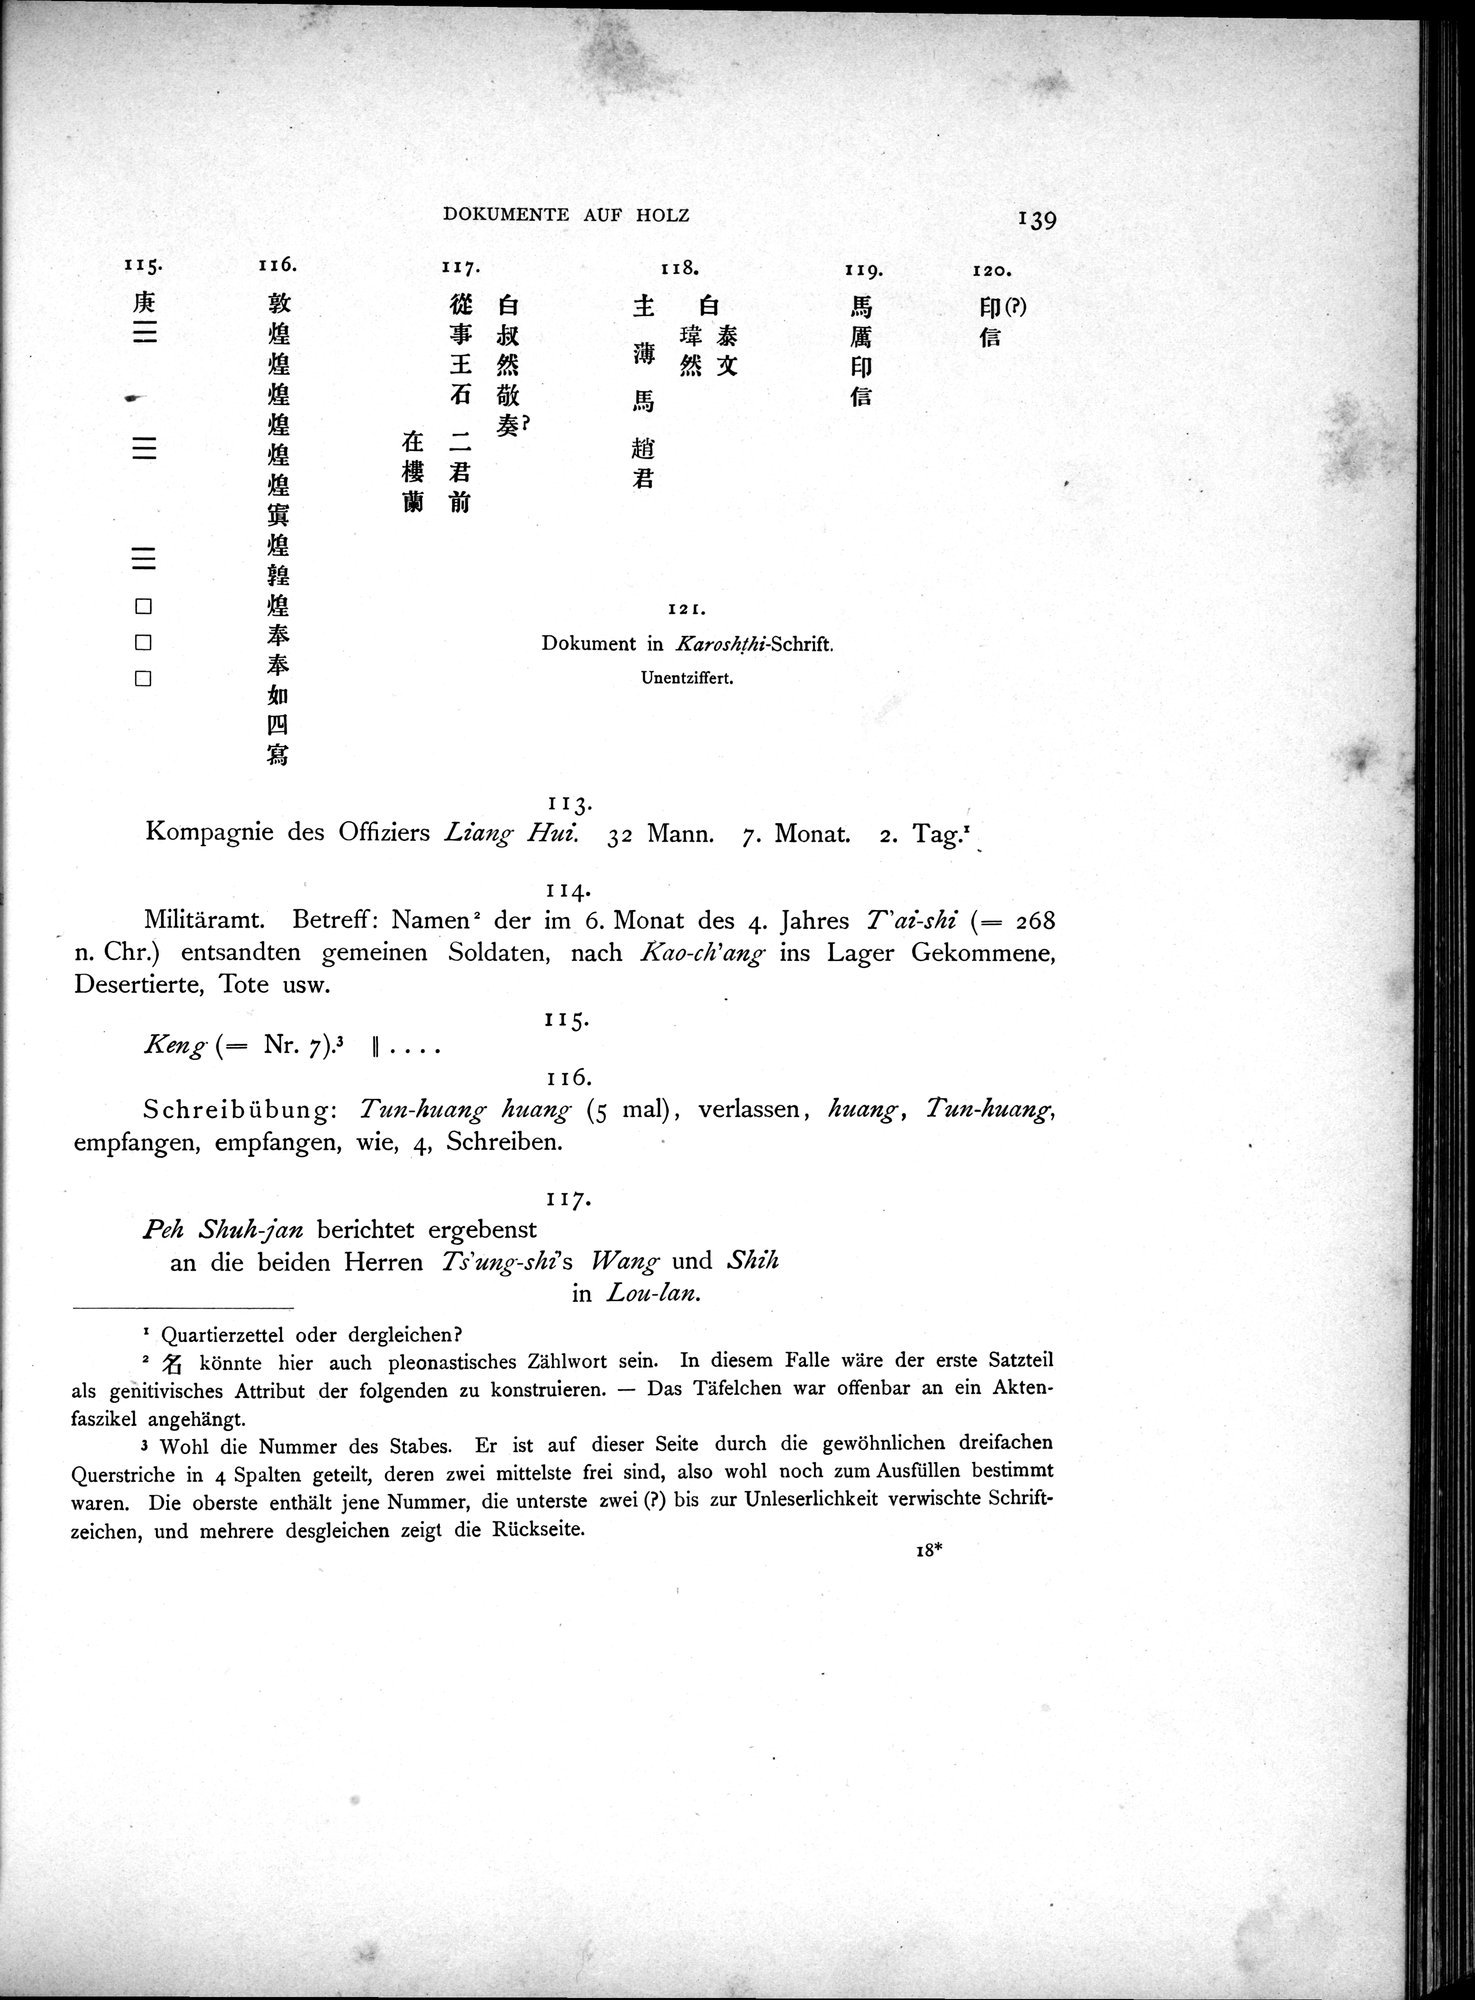 Die Chinesischen Handschriften- und sonstigen Kleinfunde Sven Hedins in Lou-lan : vol.1 / Page 163 (Grayscale High Resolution Image)